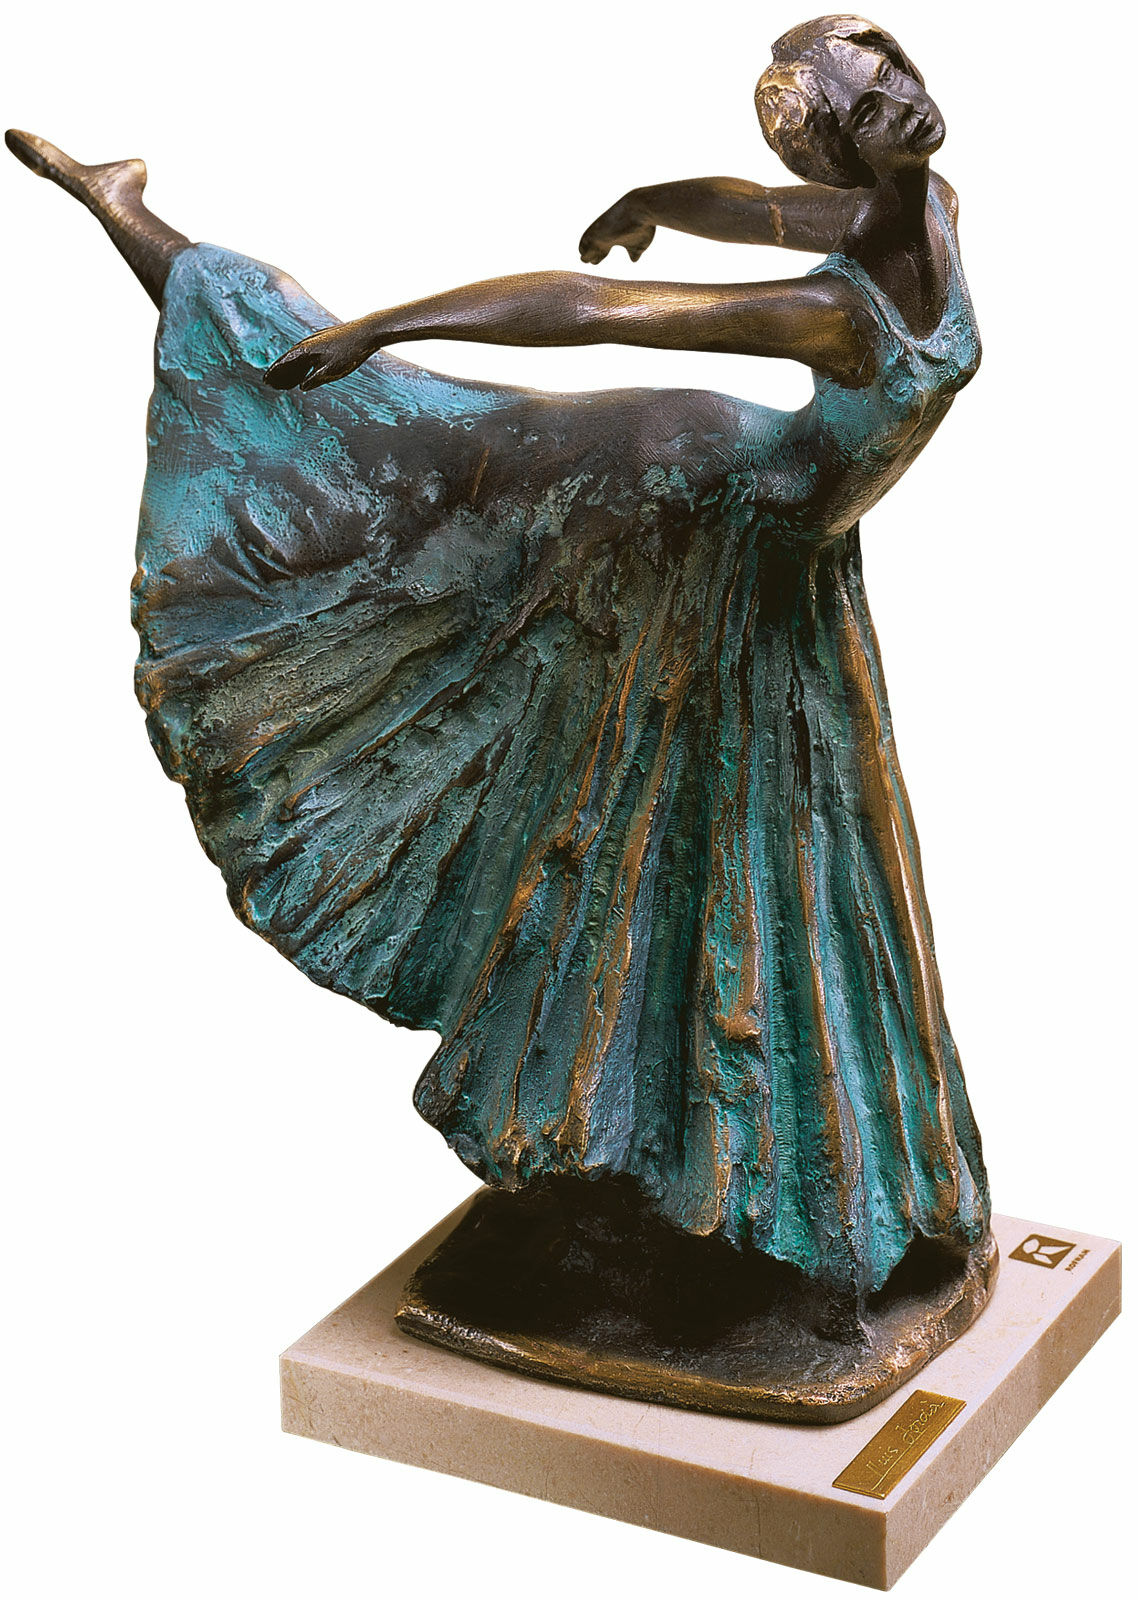 Skulptur Ballerina "Arabesco", Kunstbronze von Lluis Jorda